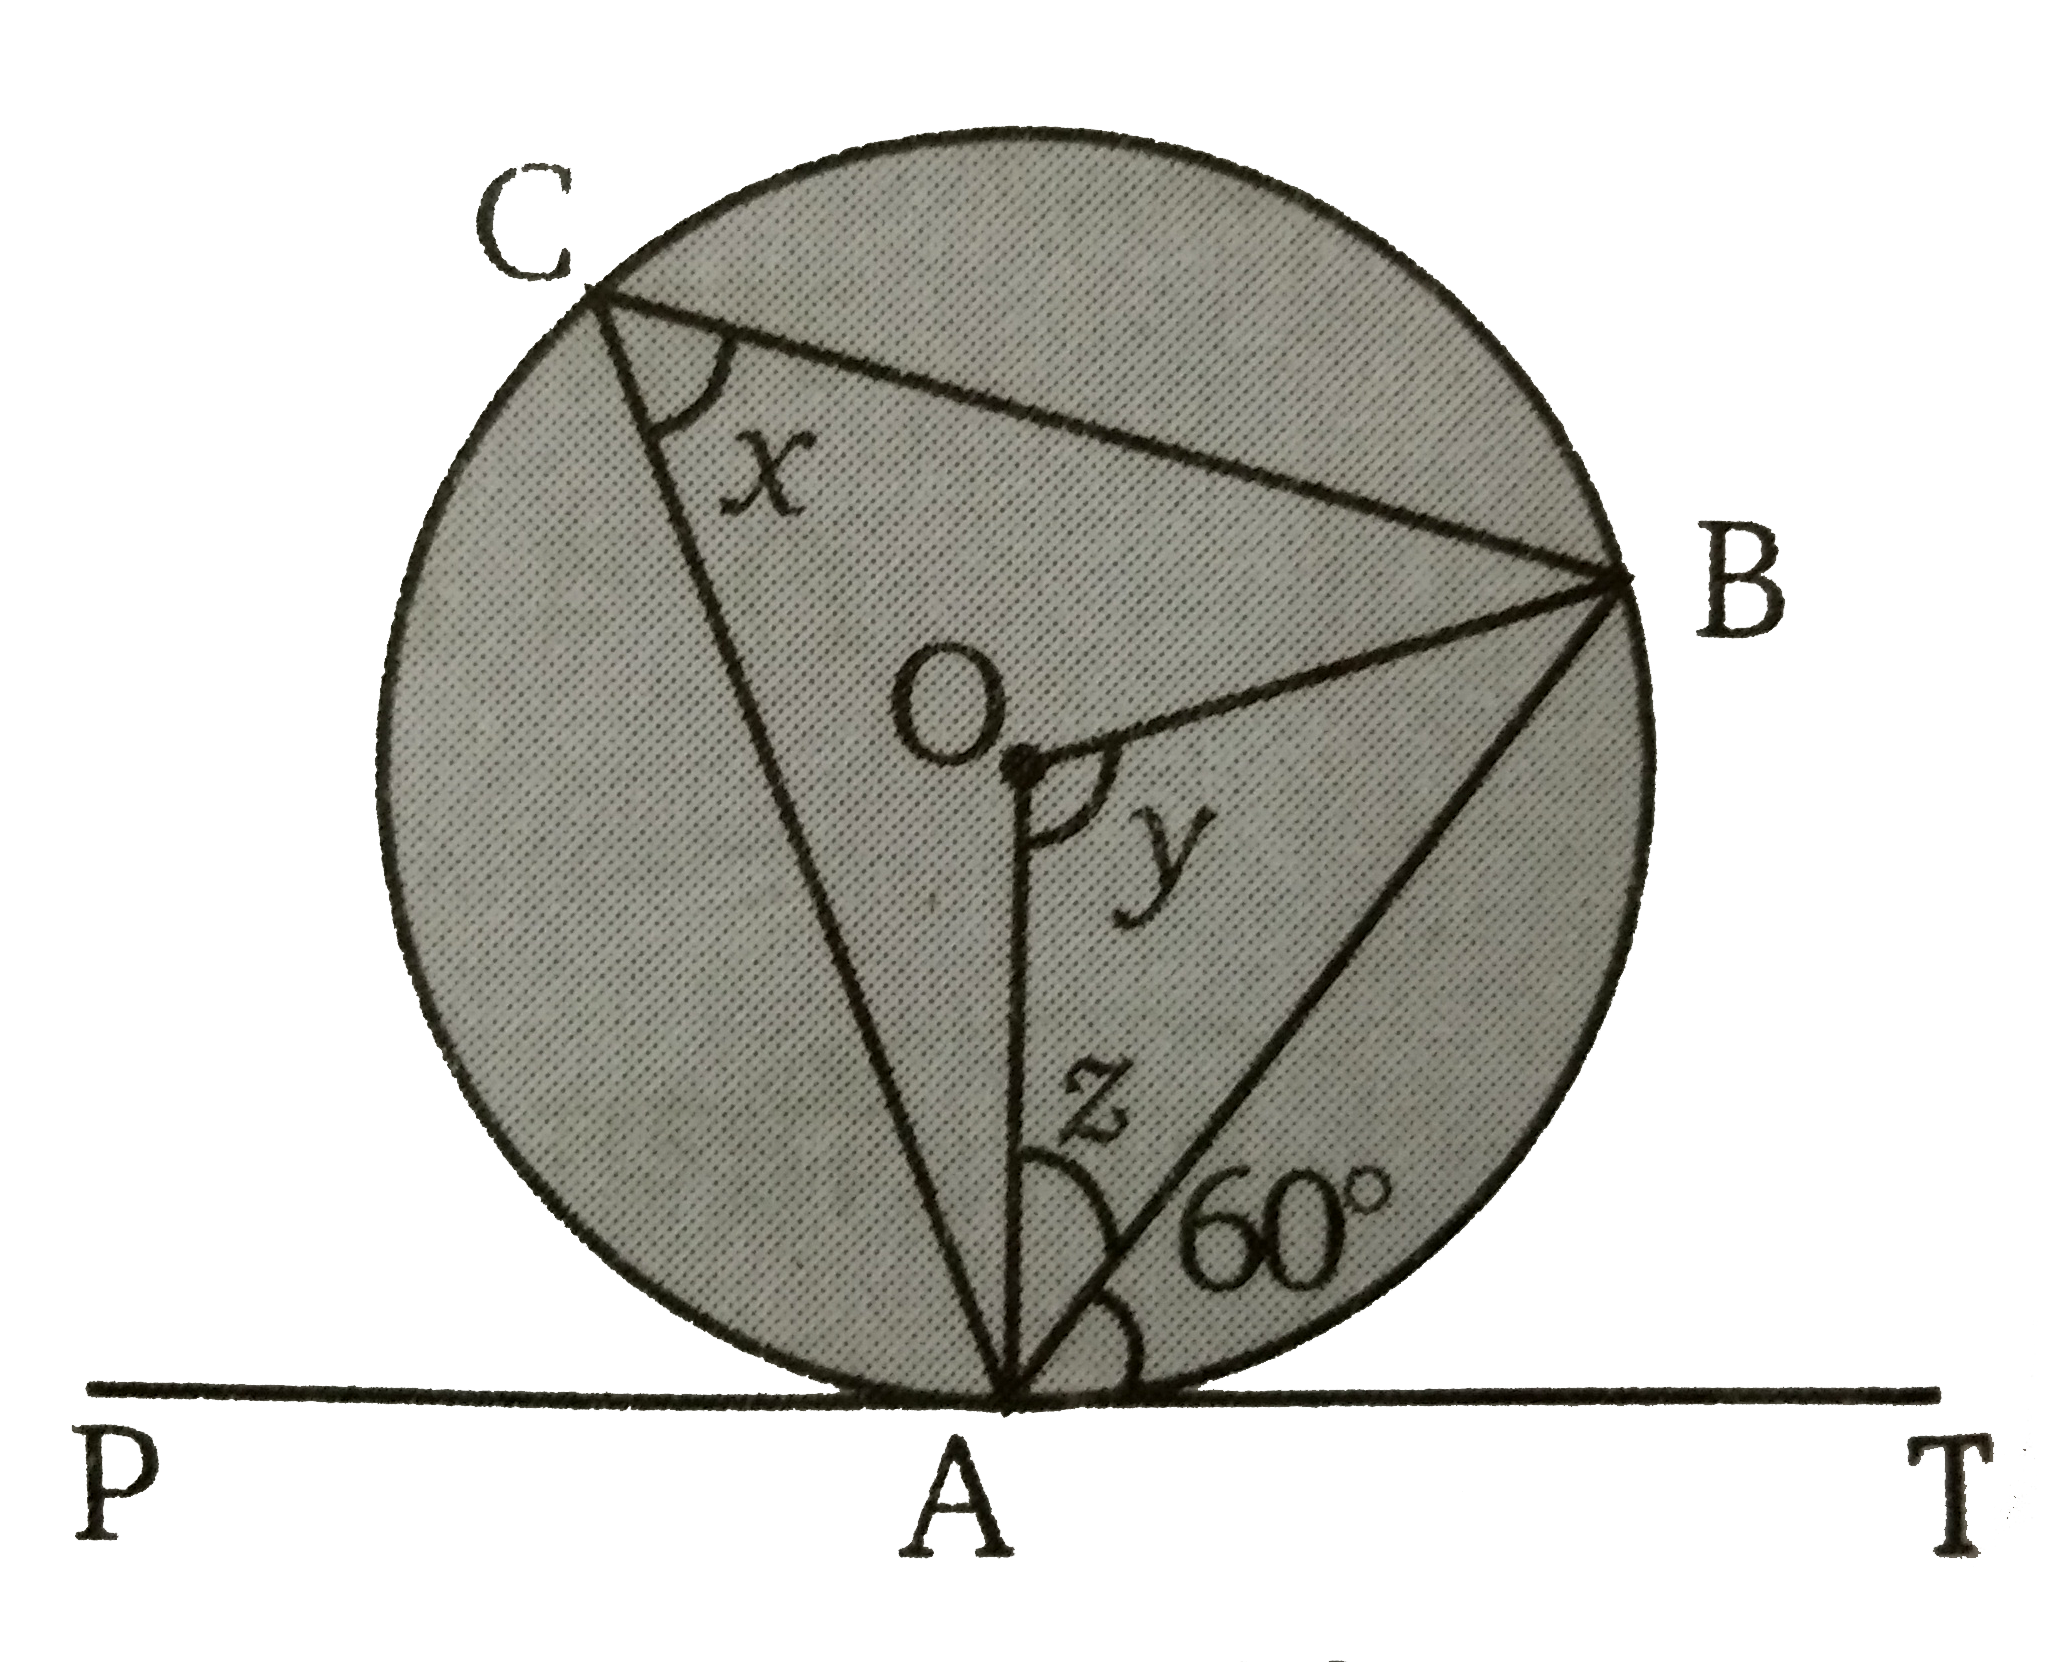 दिए गये चित्र में O  वृत्त का केंद्र है तथा AT  वृत्त पर स्पर्शी है। तब x, y  व z  के मान ज्ञात कीजिए ।